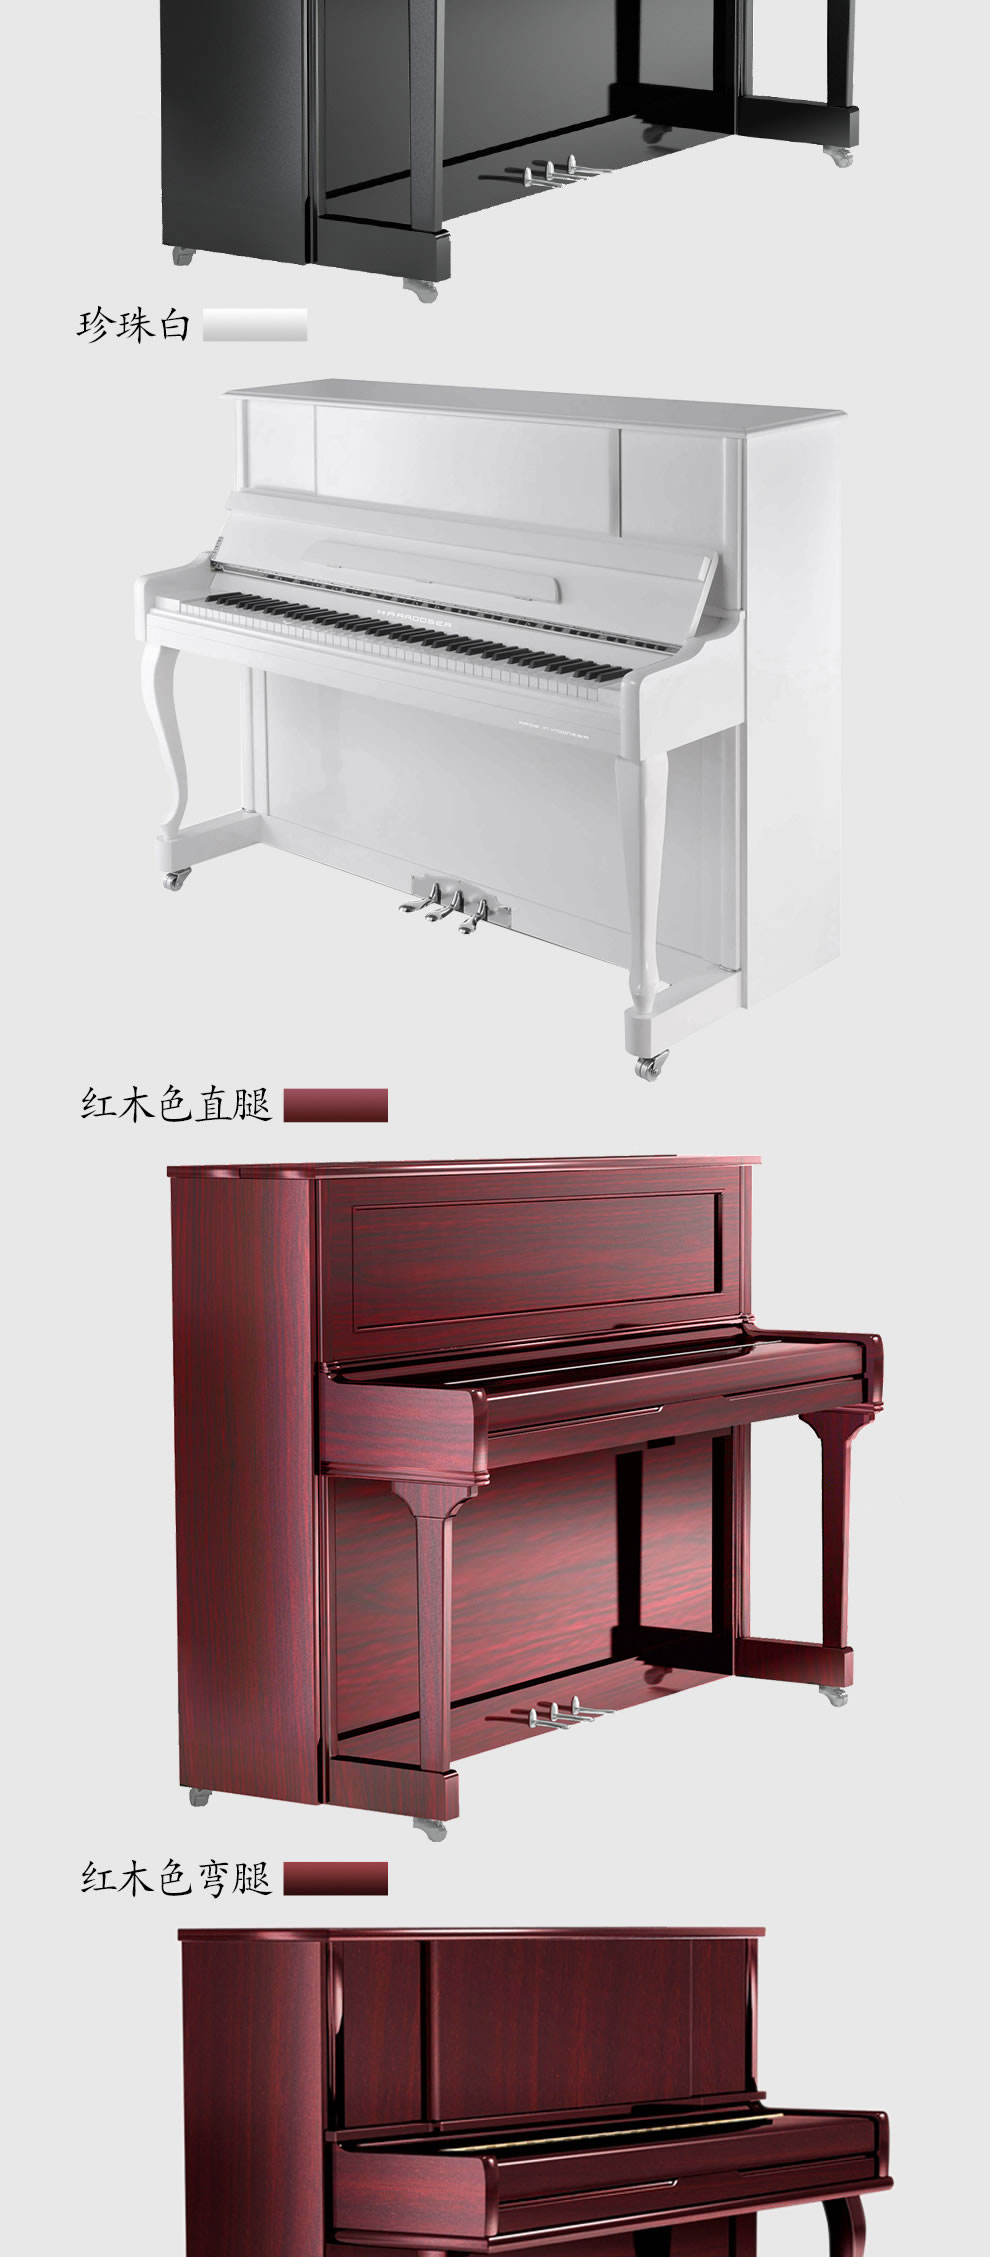 哈罗德钢琴H-2L红木色弯腿立式钢琴